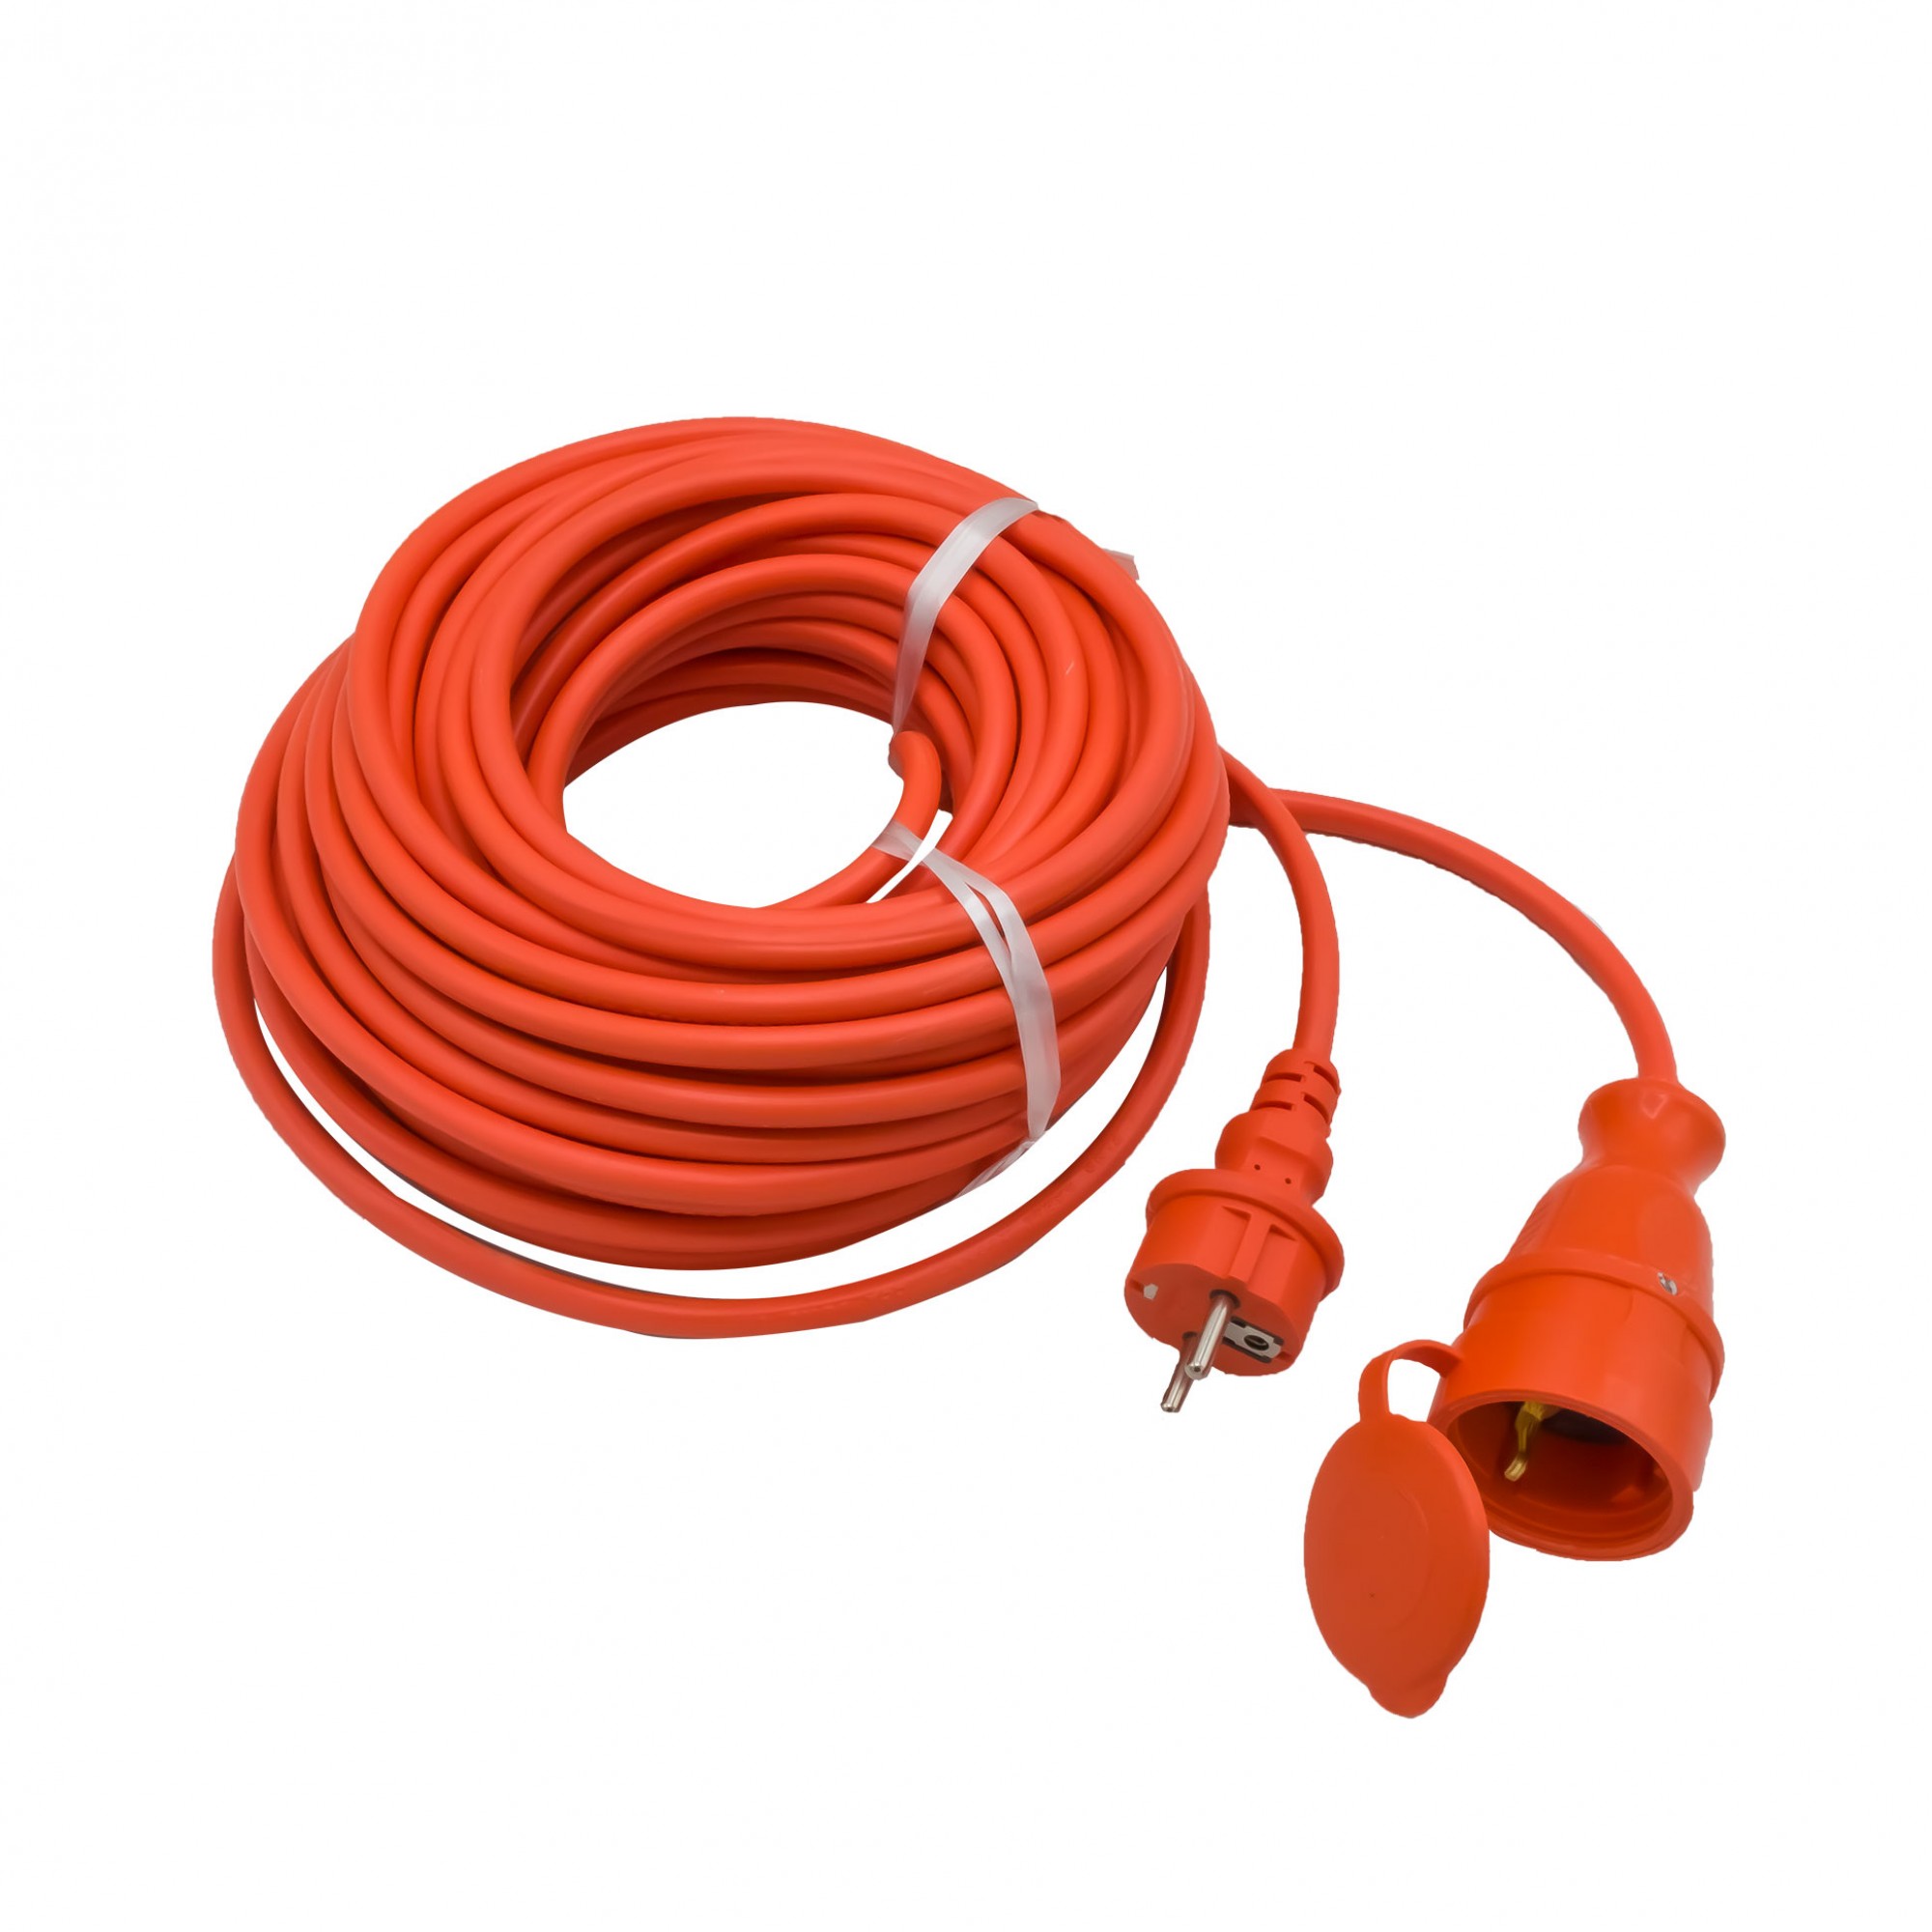 Cablu prelungitor cu conductor din cupru 3 x 1,5, 20M, cu stecher si cupla, portocaliu 